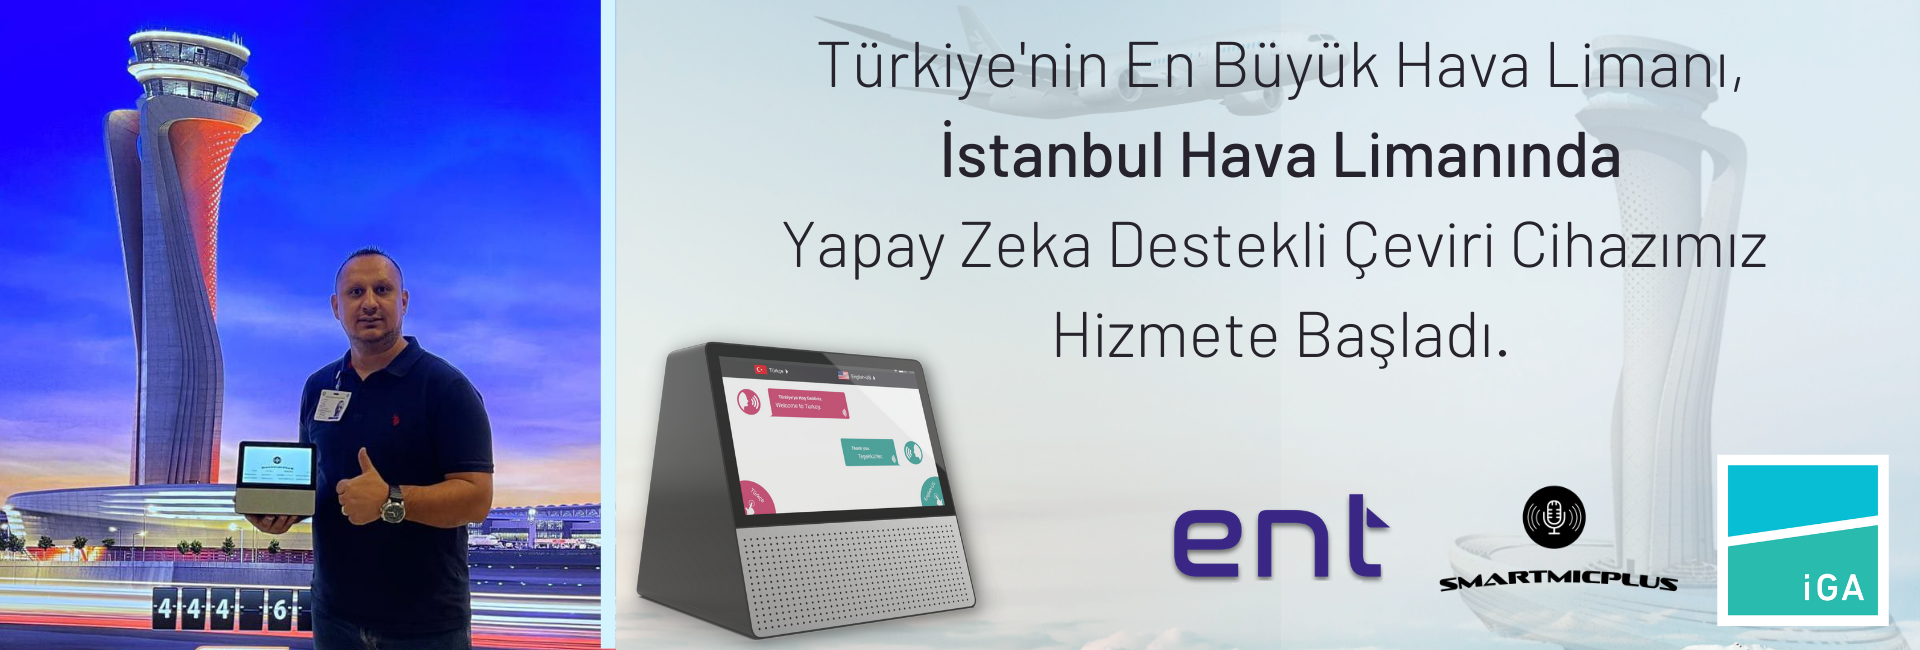 Smartmic Plus İstanbul Hava Limanında Hizmete Başladı